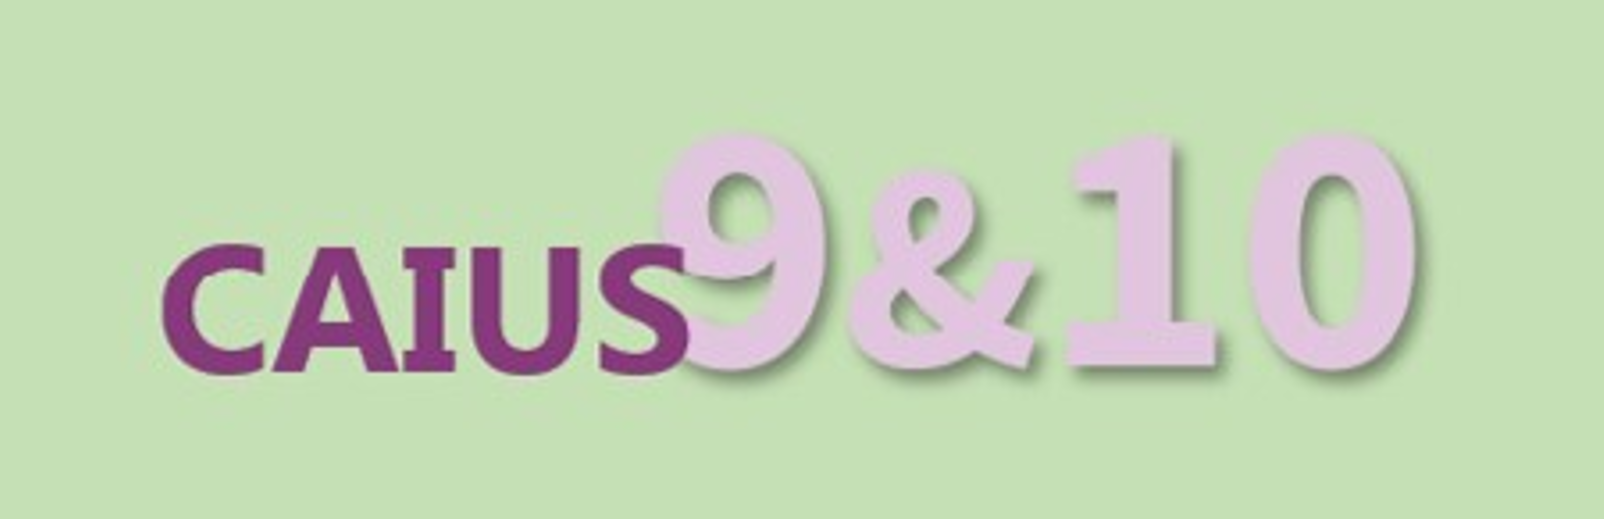 Caius 9&10 logo